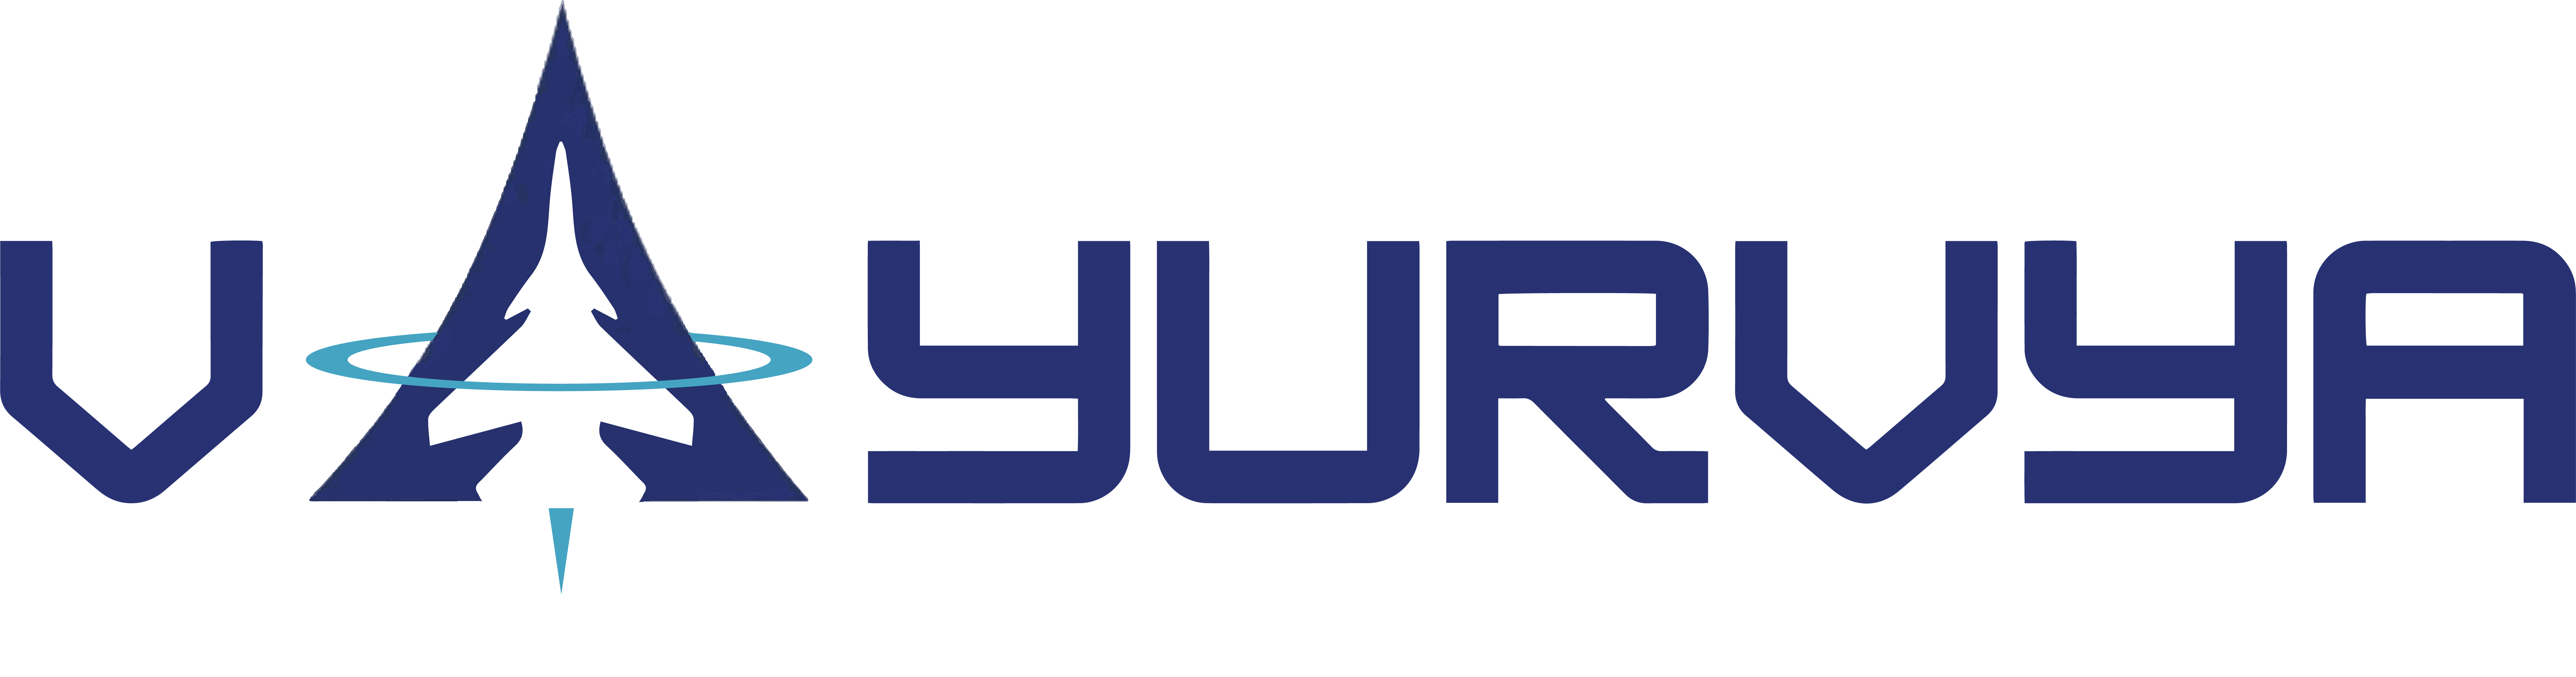 Vayurvya_logo